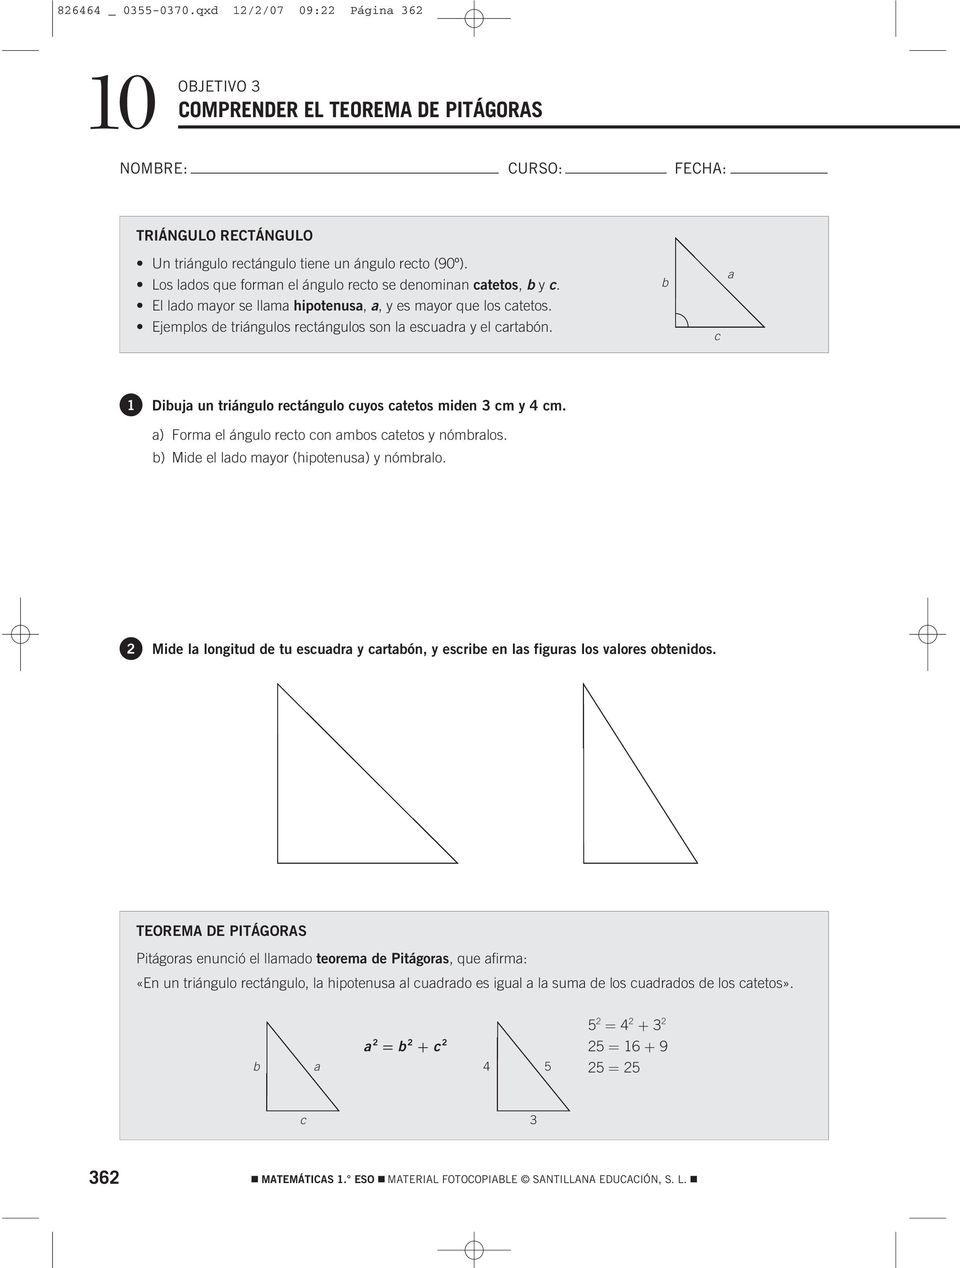 b c a 1 Dibuja un triángulo rectángulo cuyos catetos miden cm y 4 cm. a) orma el ángulo recto con ambos catetos y nómbralos. b) Mide el lado mayor (hipotenusa) y nómbralo.